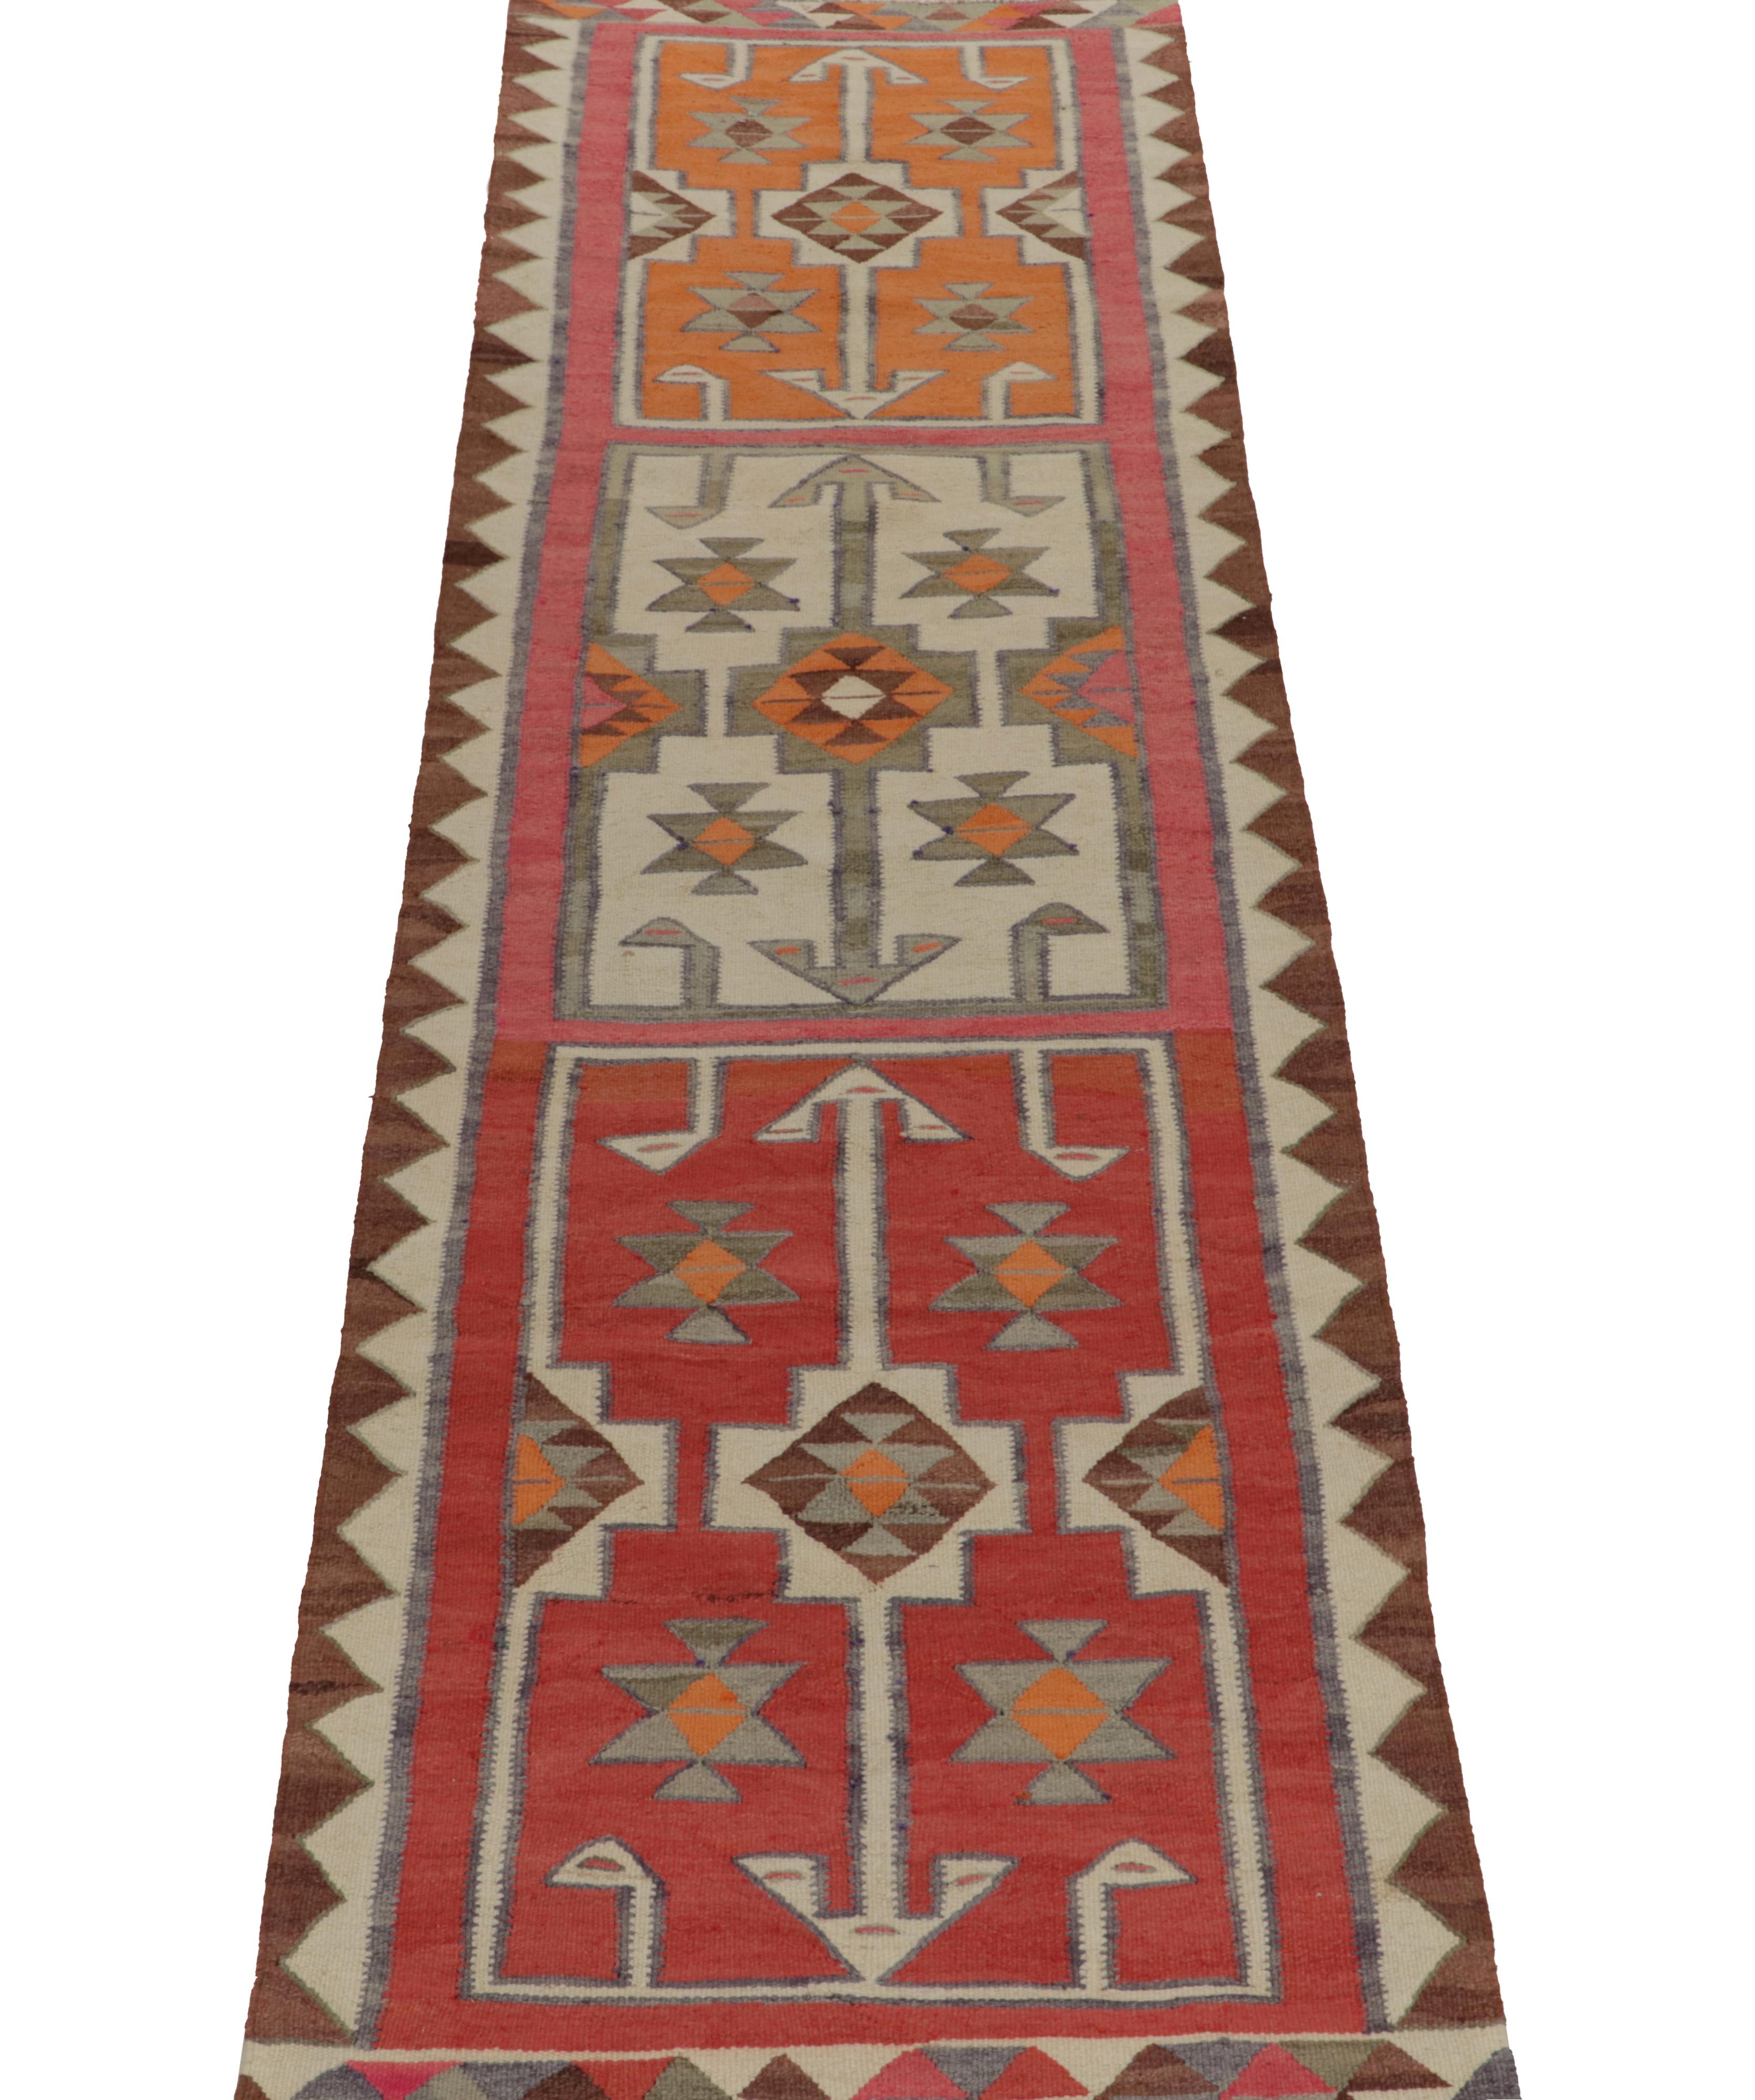 Turkish Vintage Kilim Tribal Runner in Red, Orange Geometric Pattern by Rug & Kilim For Sale